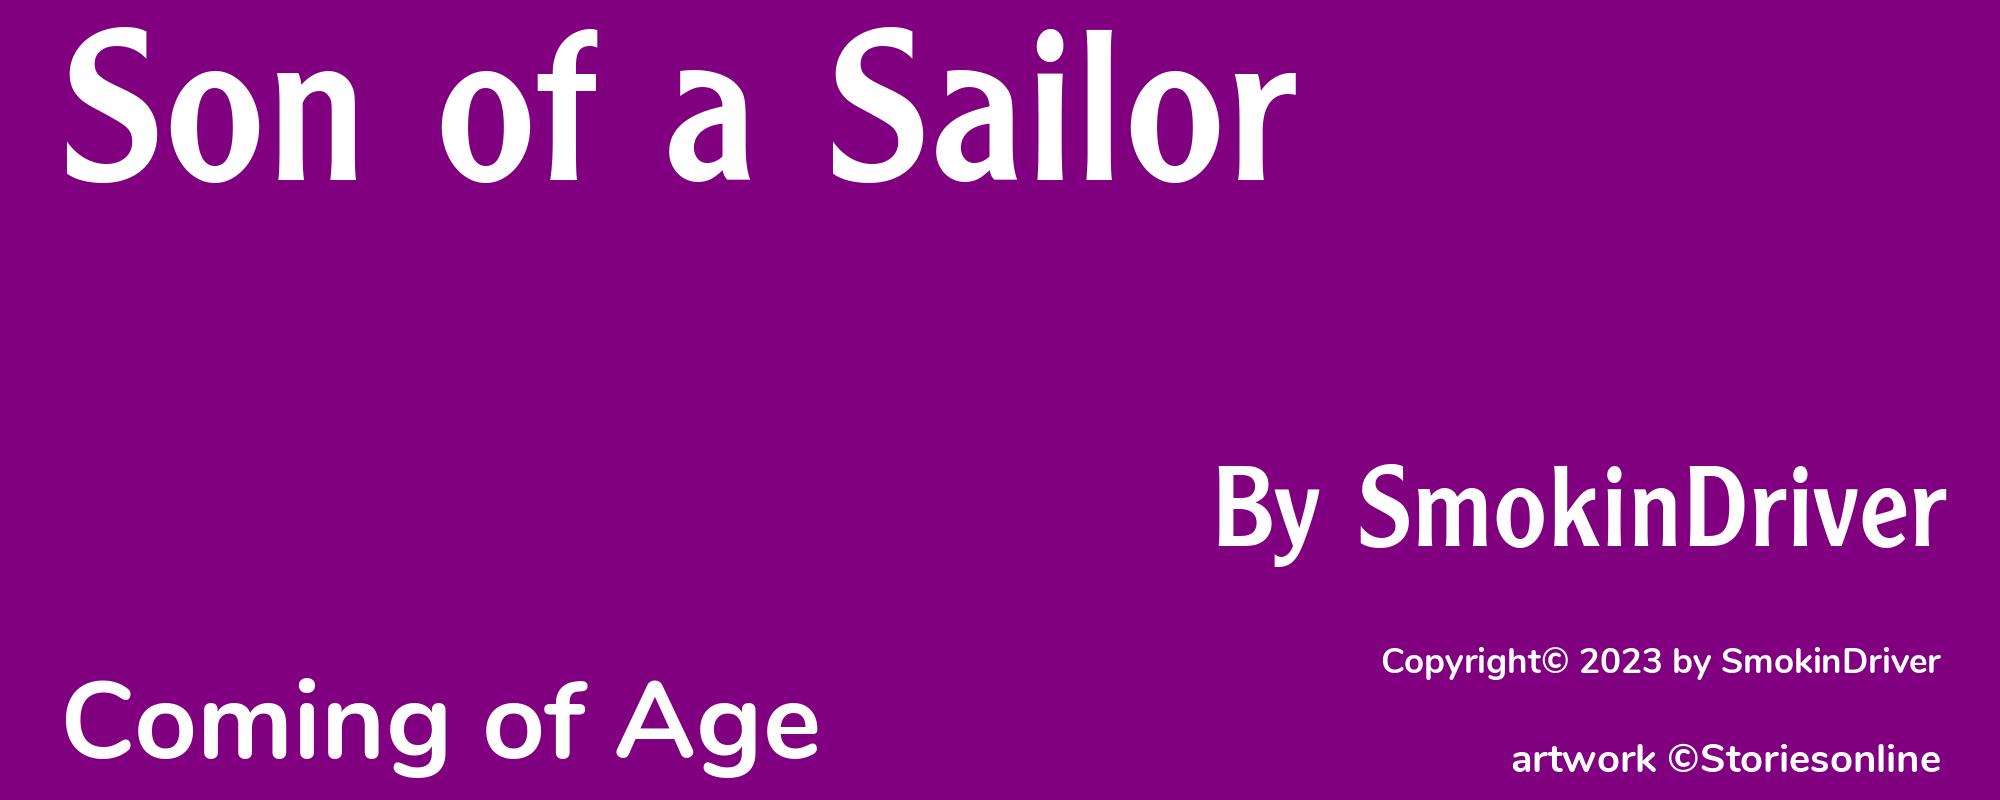 Son of a Sailor - Cover